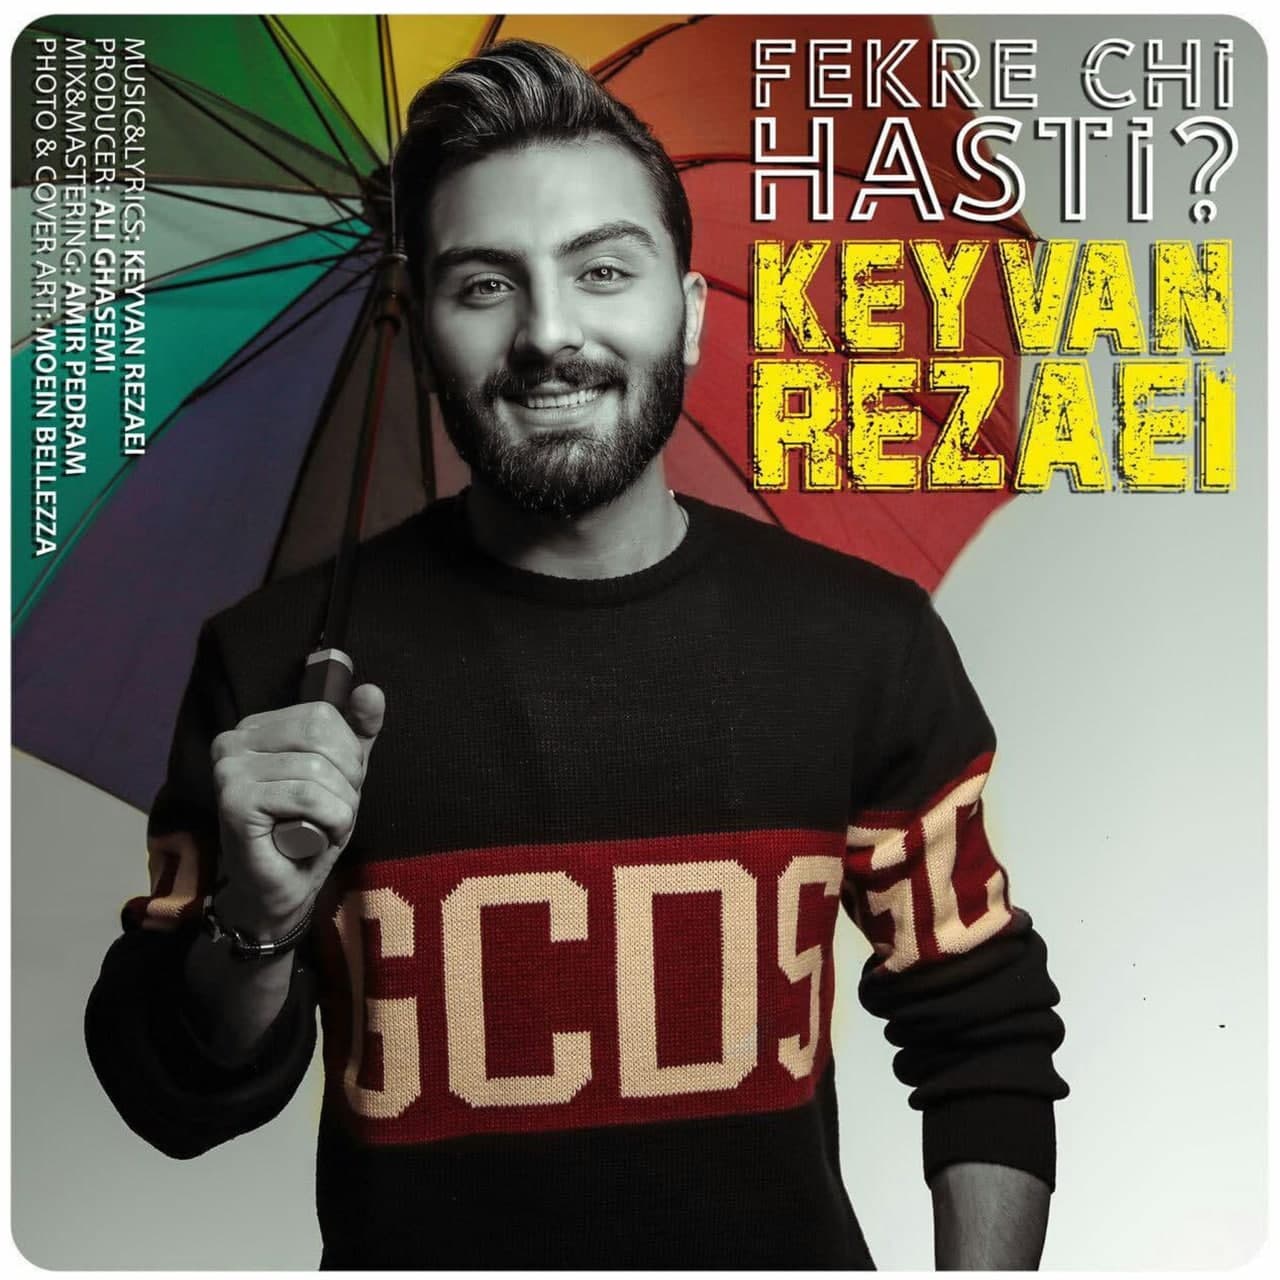  دانلود آهنگ جدید کیوان رضایی - فکر چی هستی | Download New Music By Keyvan Rezaei - Fekre Chi Hasti